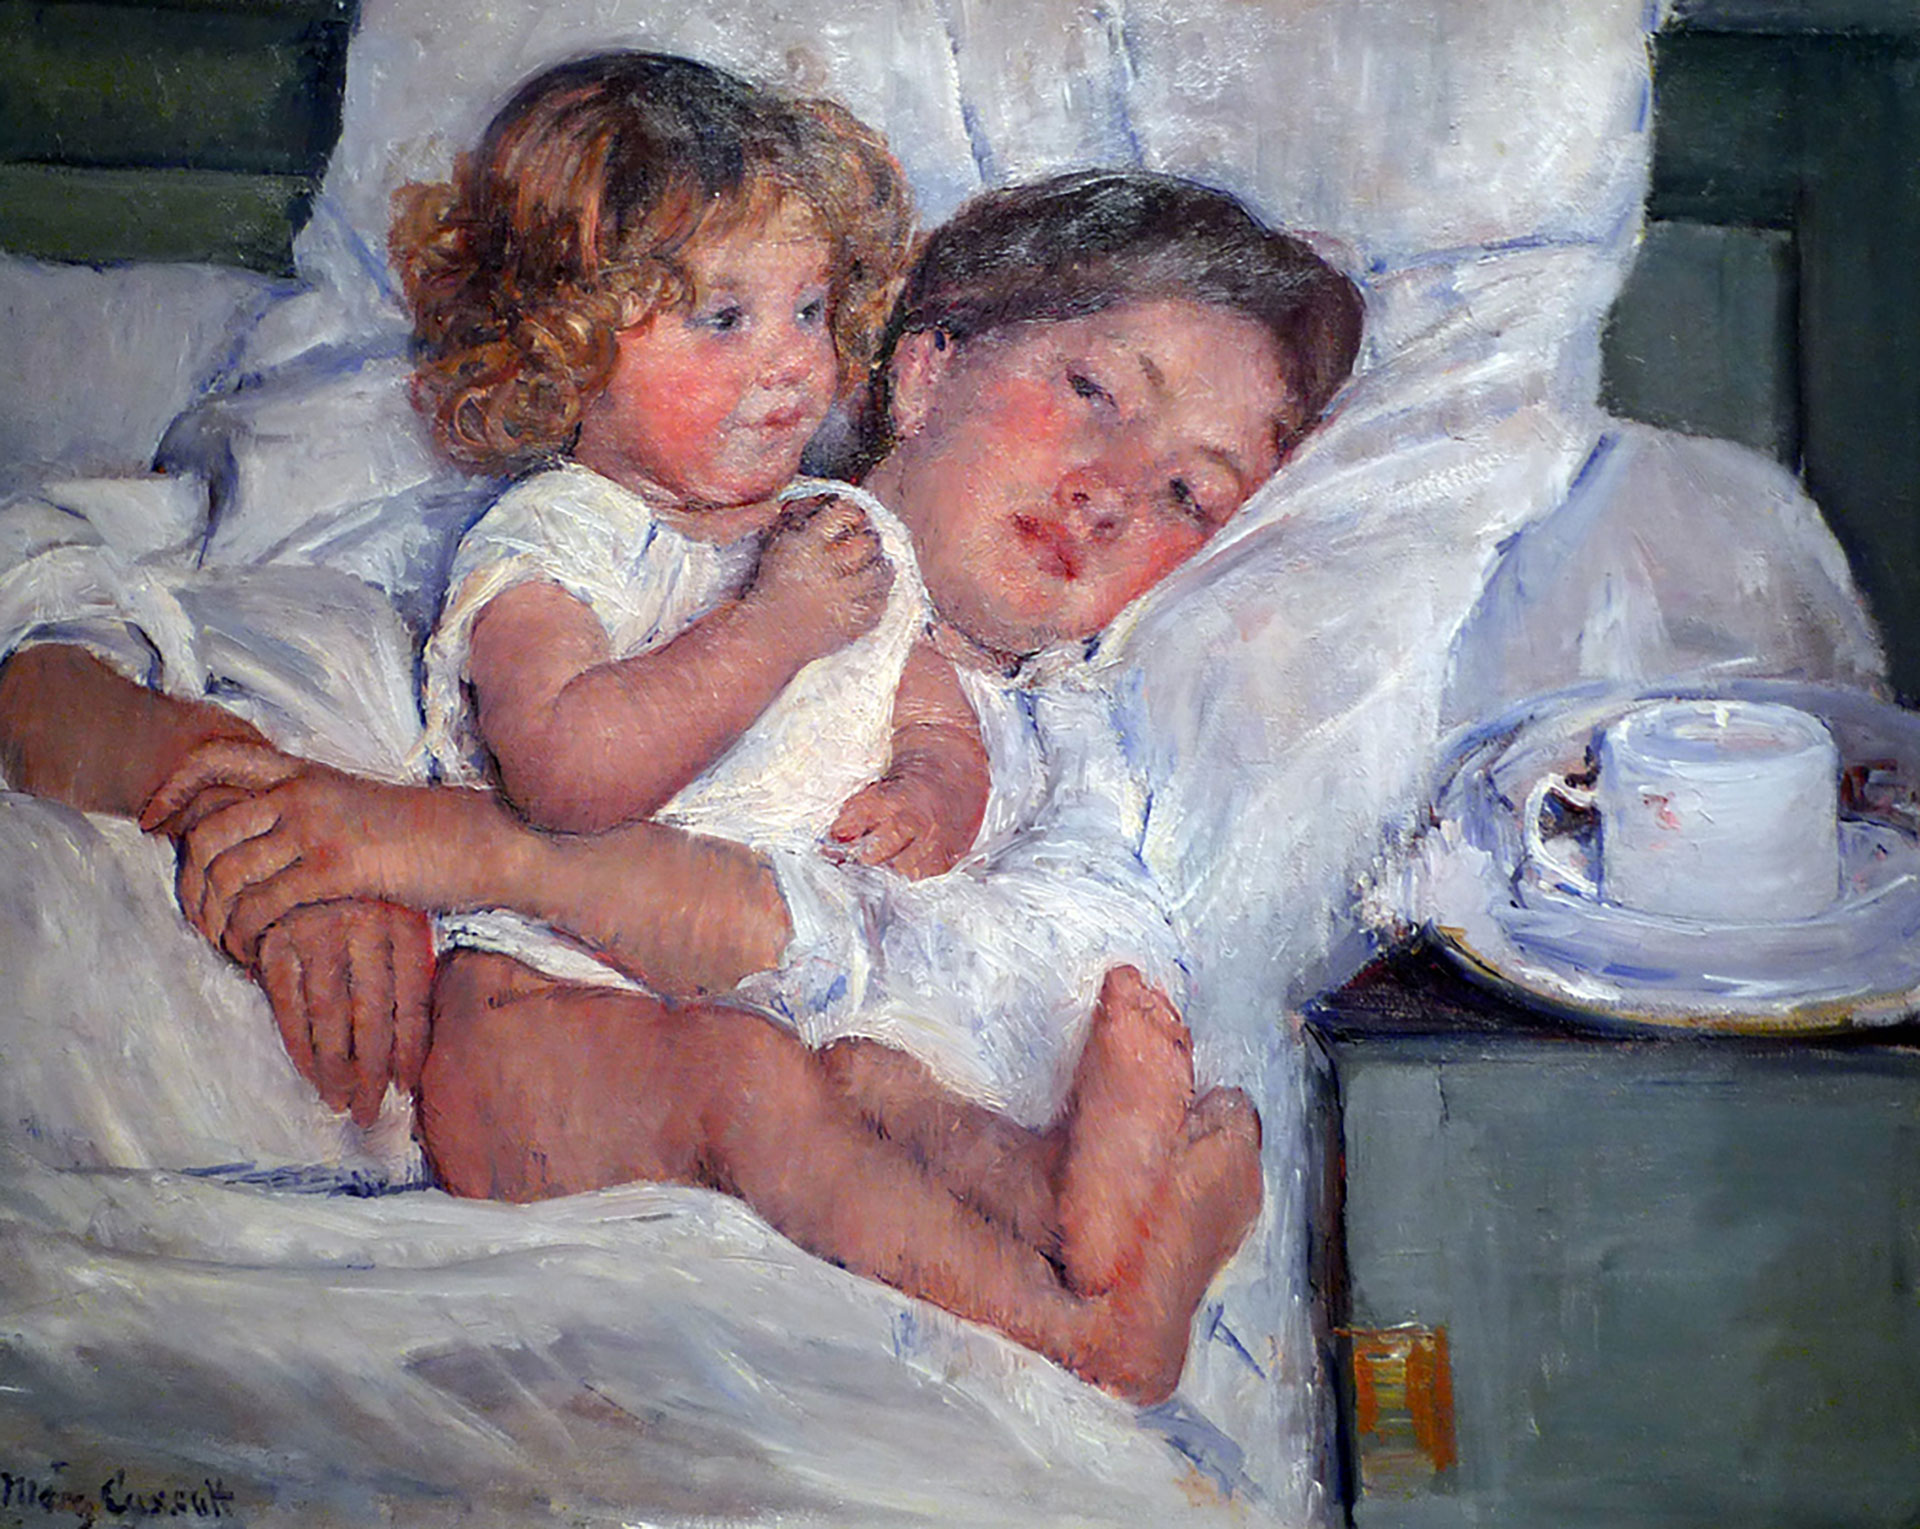 Mary Cassatt, "Breakfast in Bed" (1897).